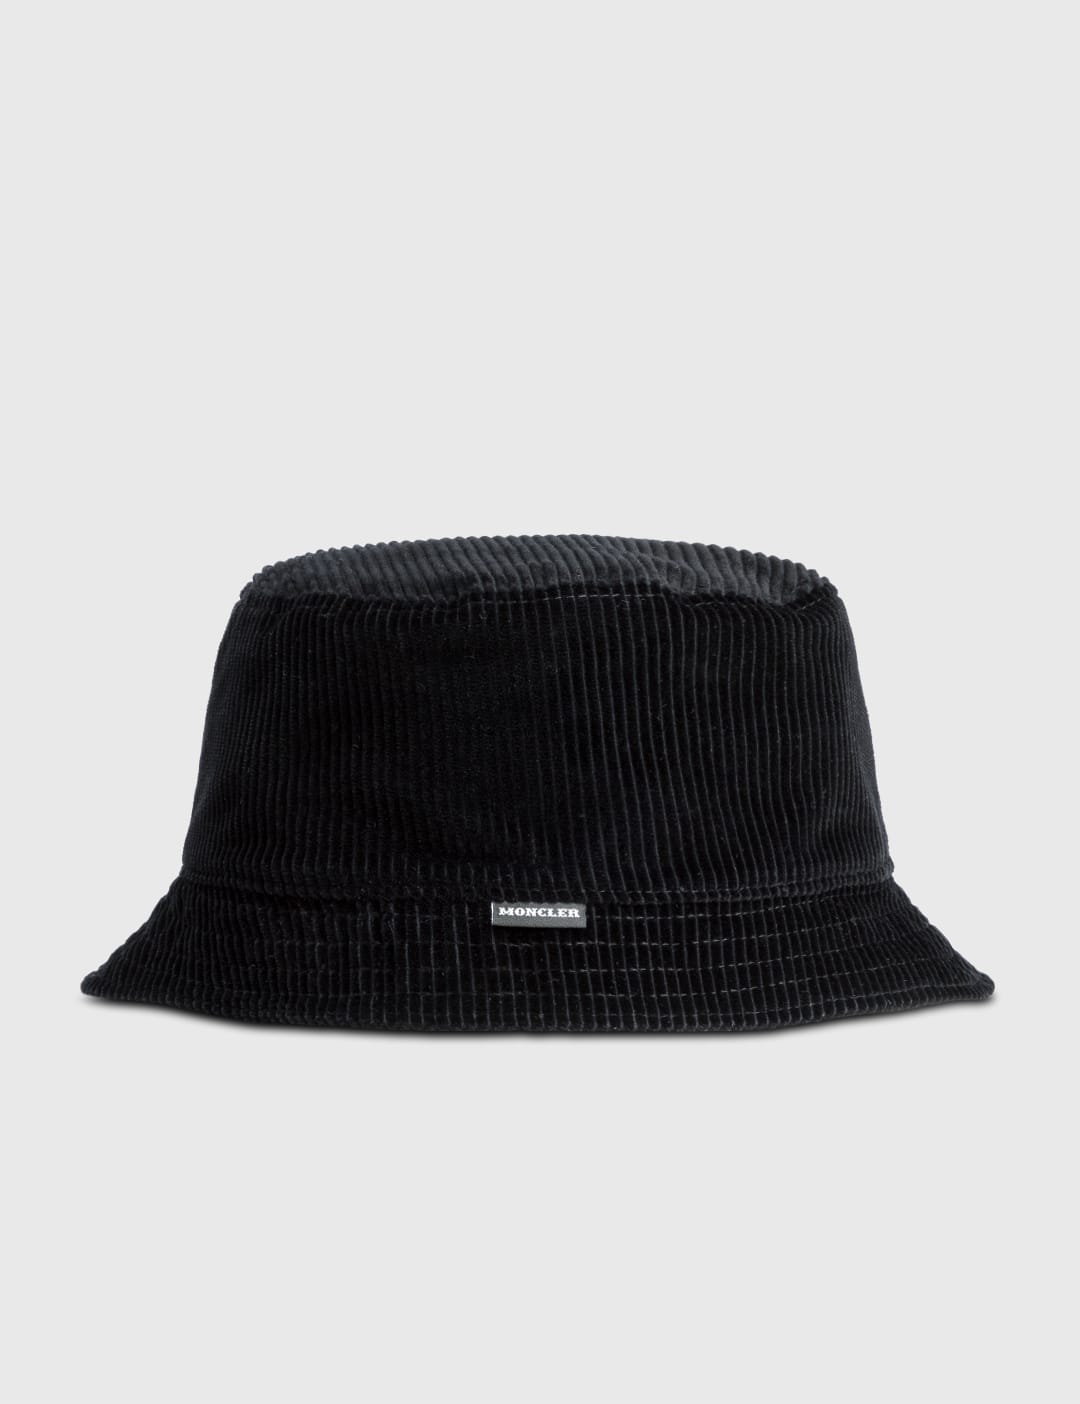 Moncler Genius - 7 Moncler FRGMT Hiroshi Fujiwara Bucket Hat | HBX